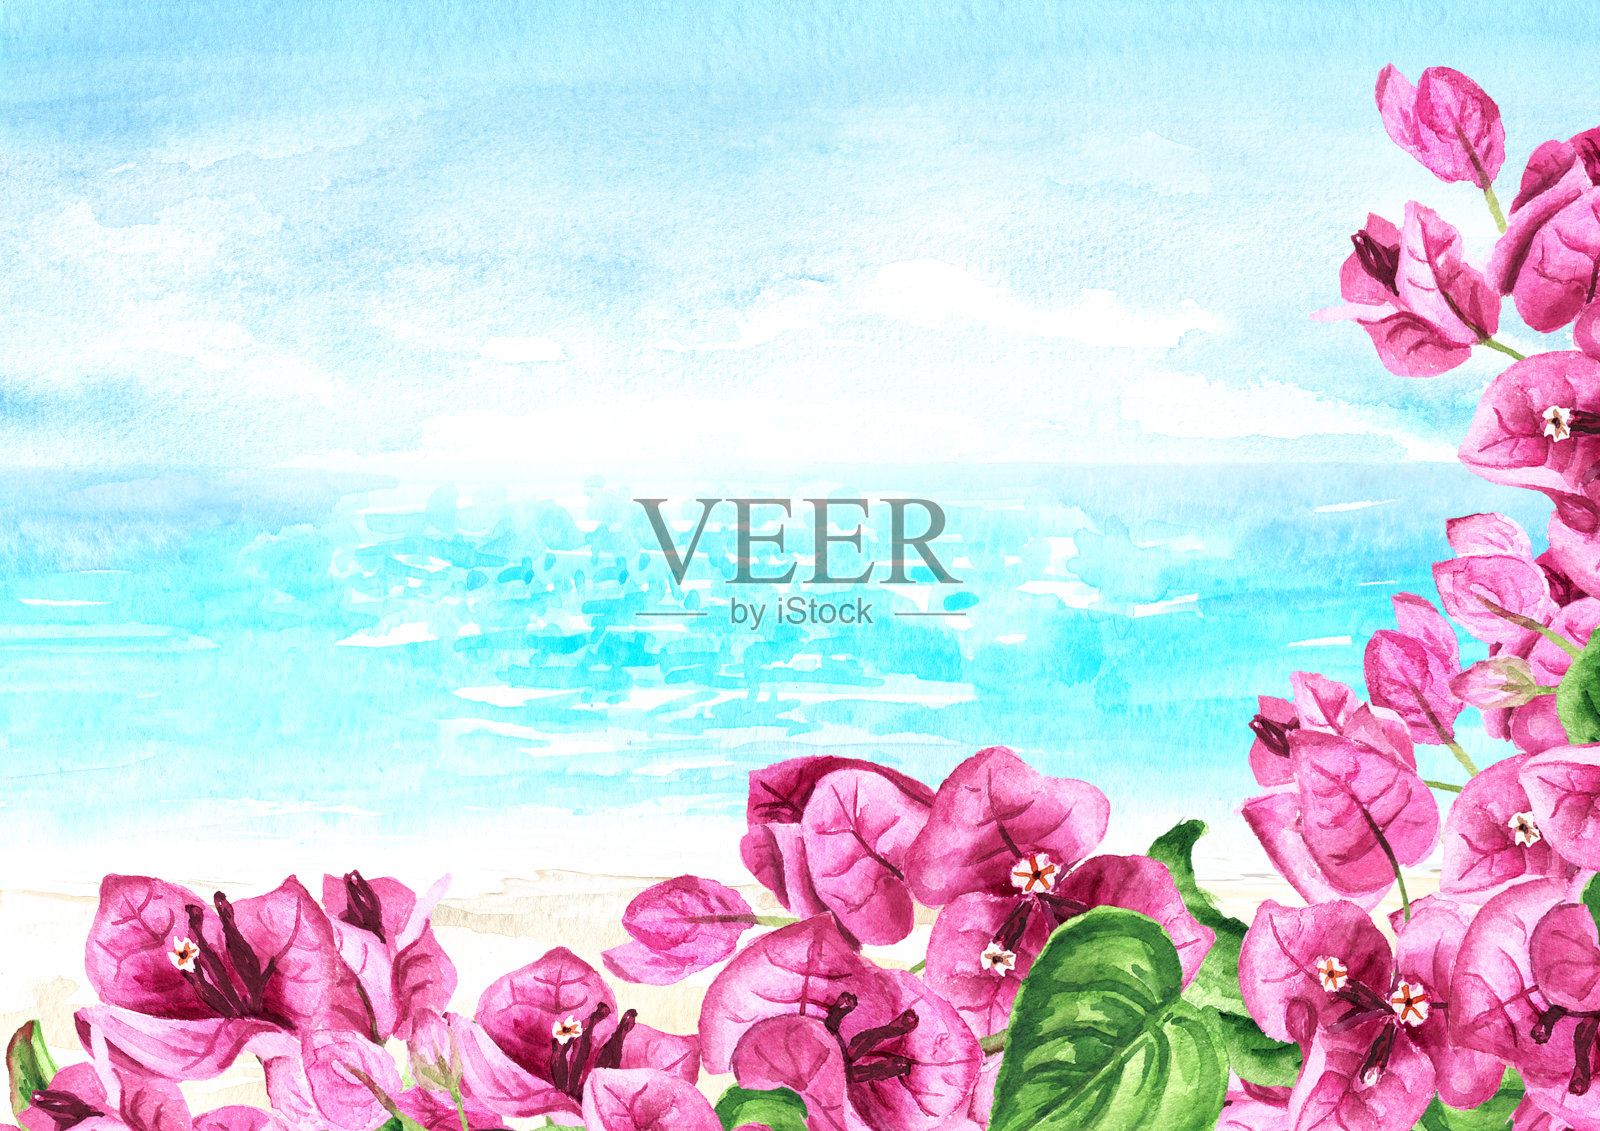 粉红色的九重葛枝叶相框，大海与蓝天相映衬。手绘水彩插图和背景插画图片素材